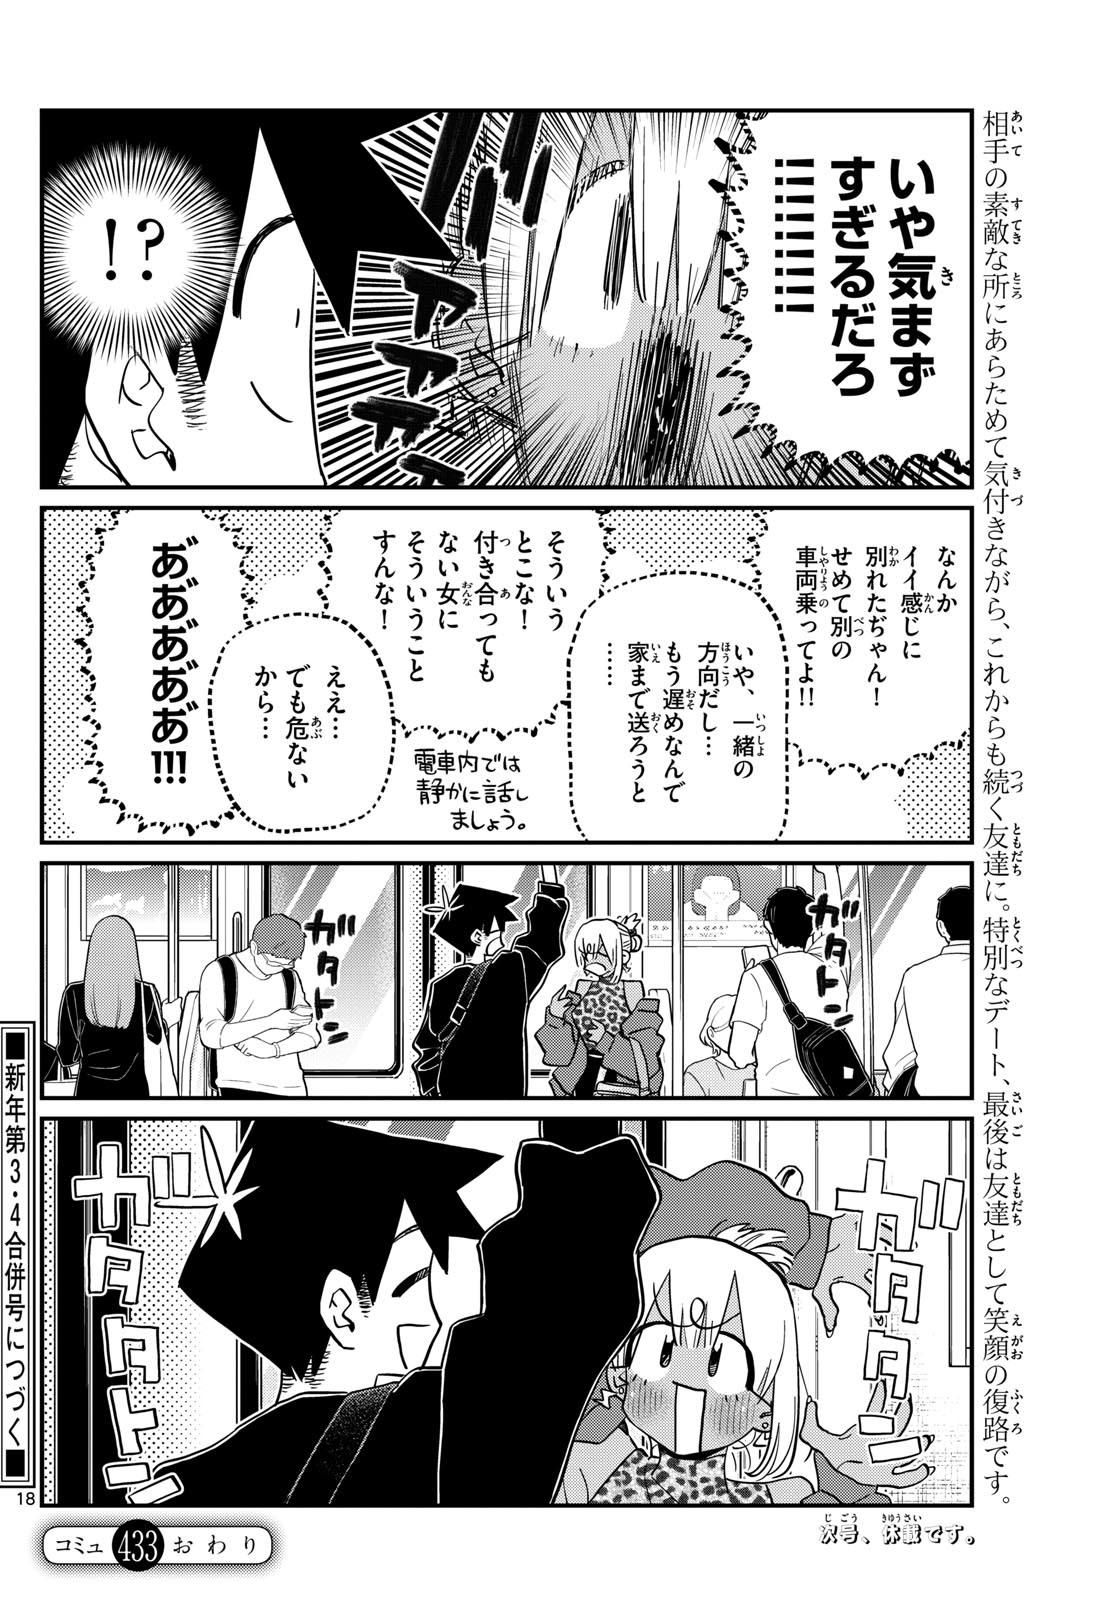 Komi-san wa Komyushou Desu - Chapter 433 - Page 18